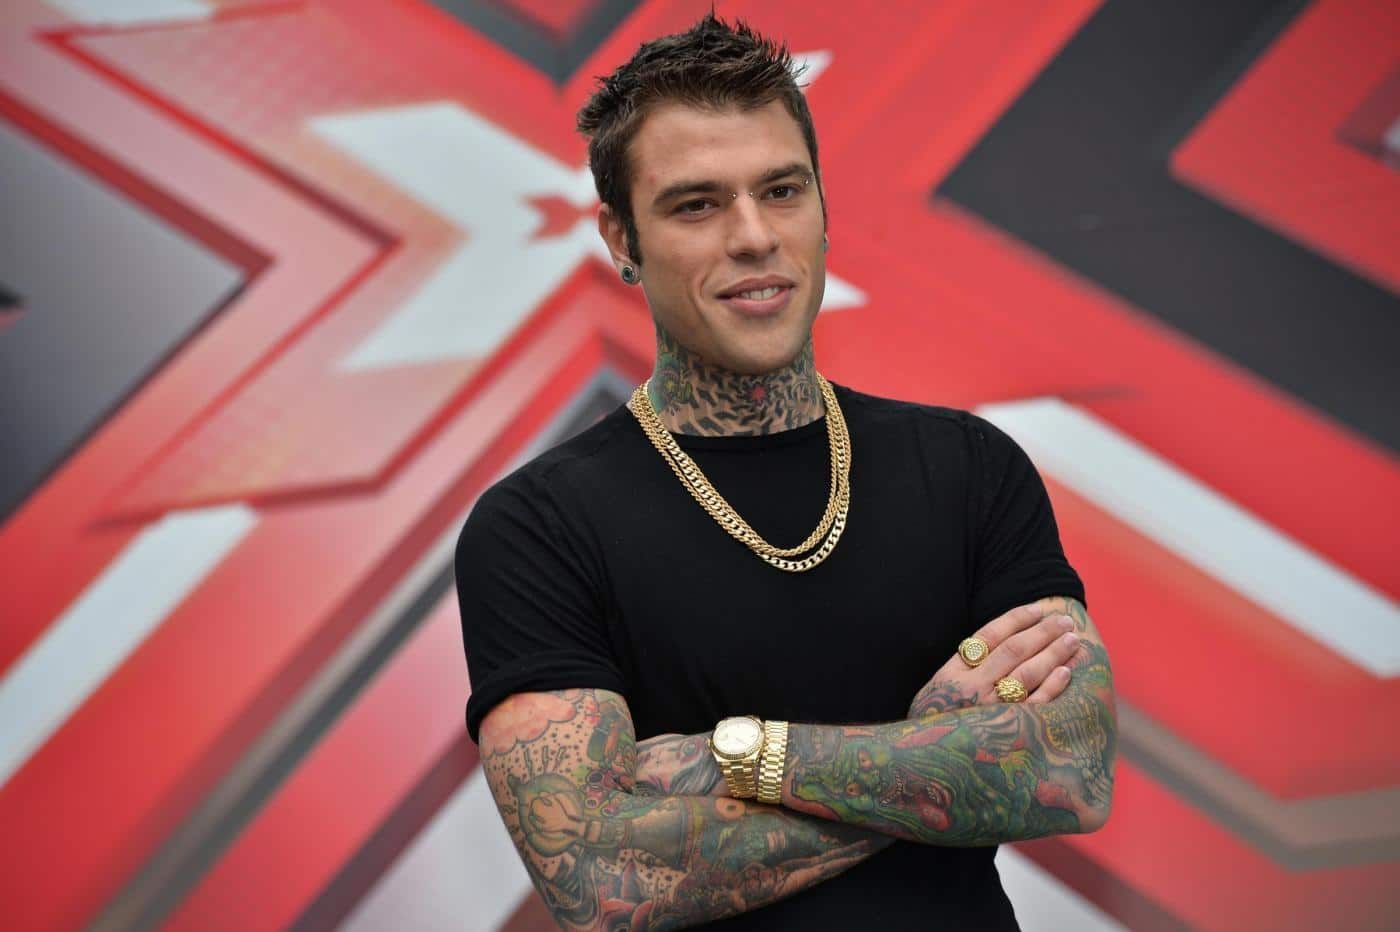 Fedez alla presentazione ufficiale di X Factor scatena il web, critiche per il rapper